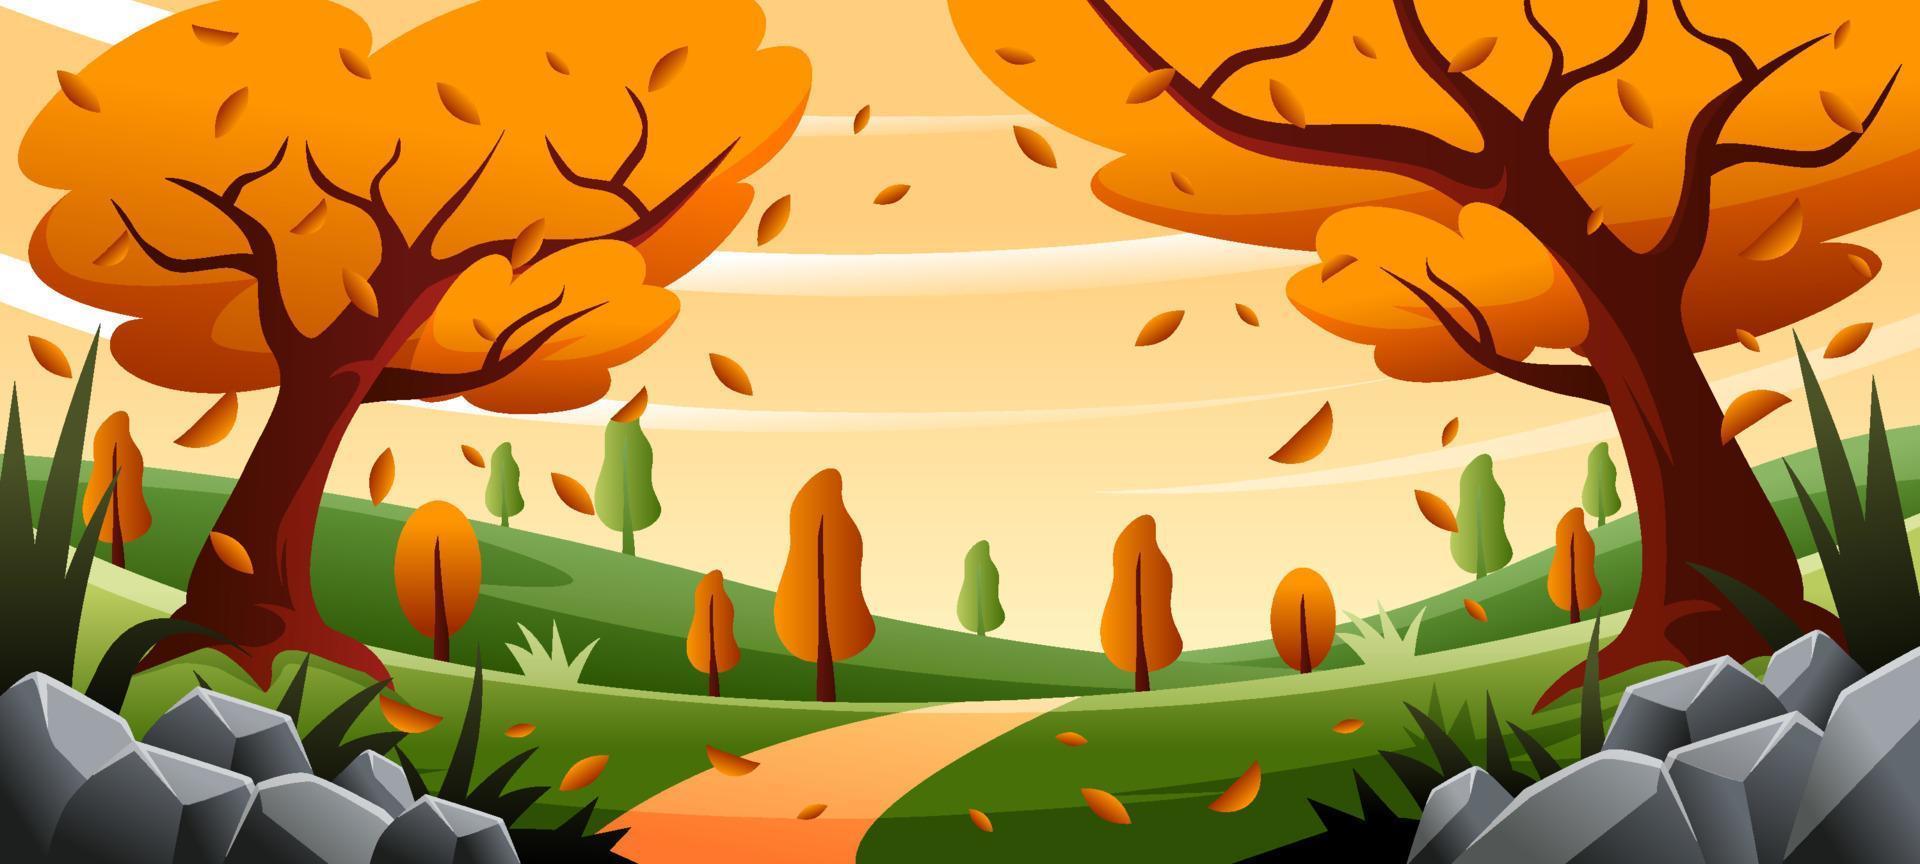 paisagem no outono com folhas caídas vetor